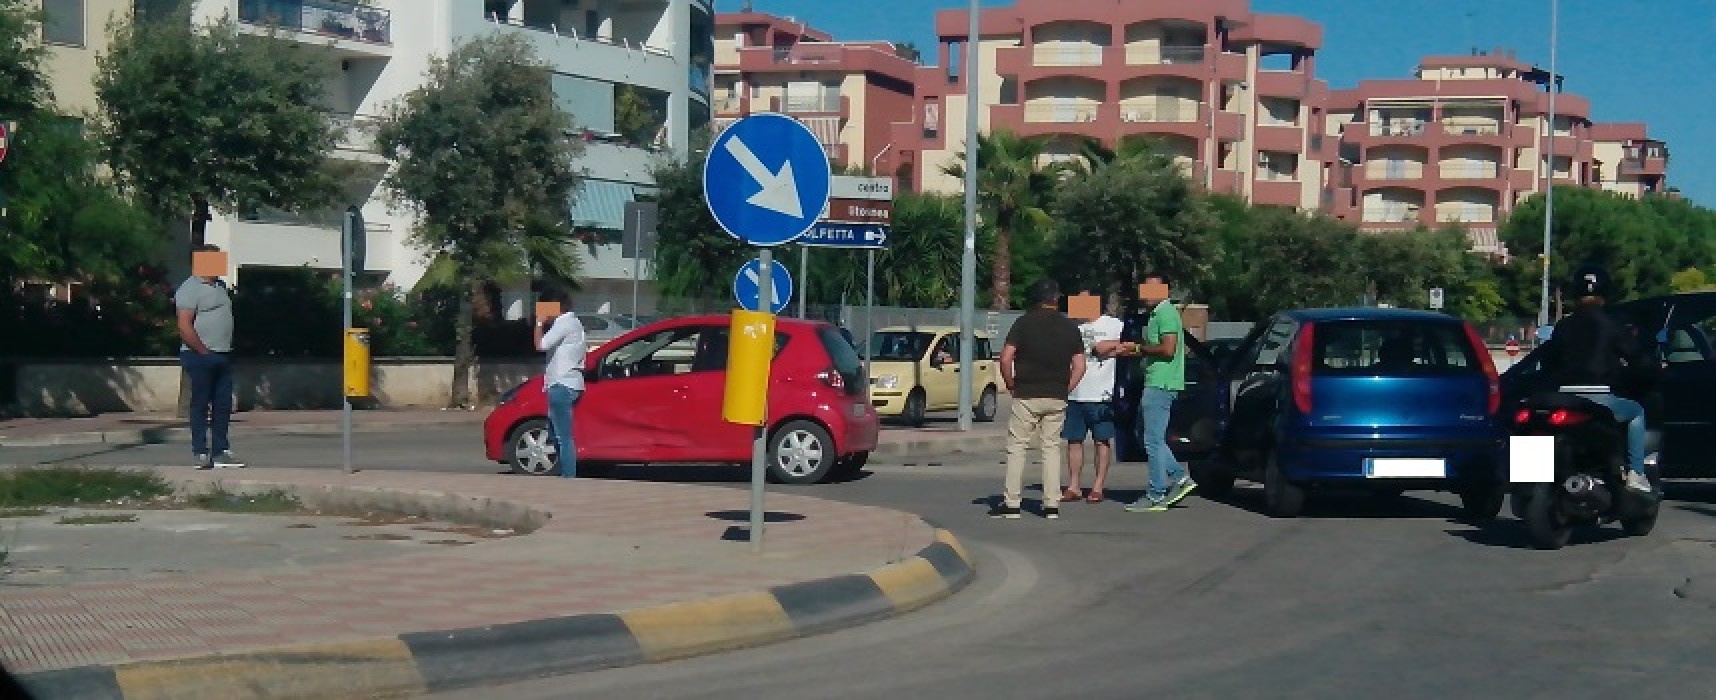 Rotatoria Cala dell’Arciprete-Via Fragata, incidente tra una Aygo e una Punto / FOTO